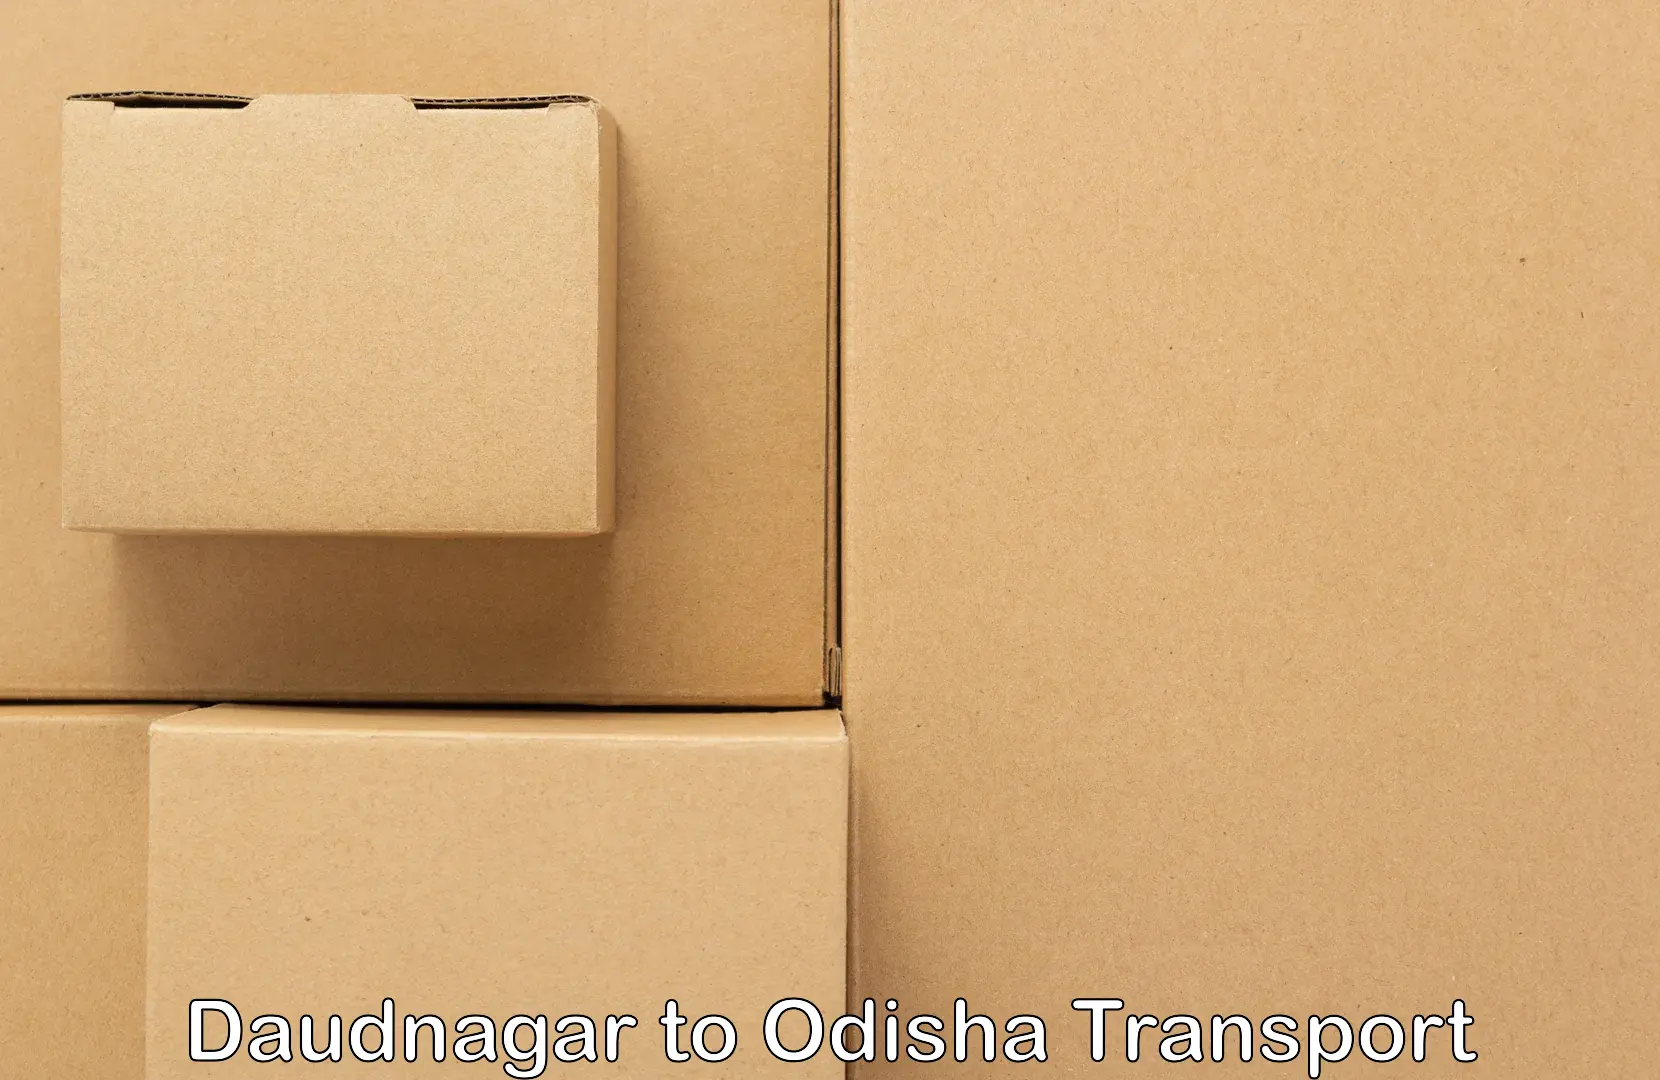 Daily transport service Daudnagar to Balinga